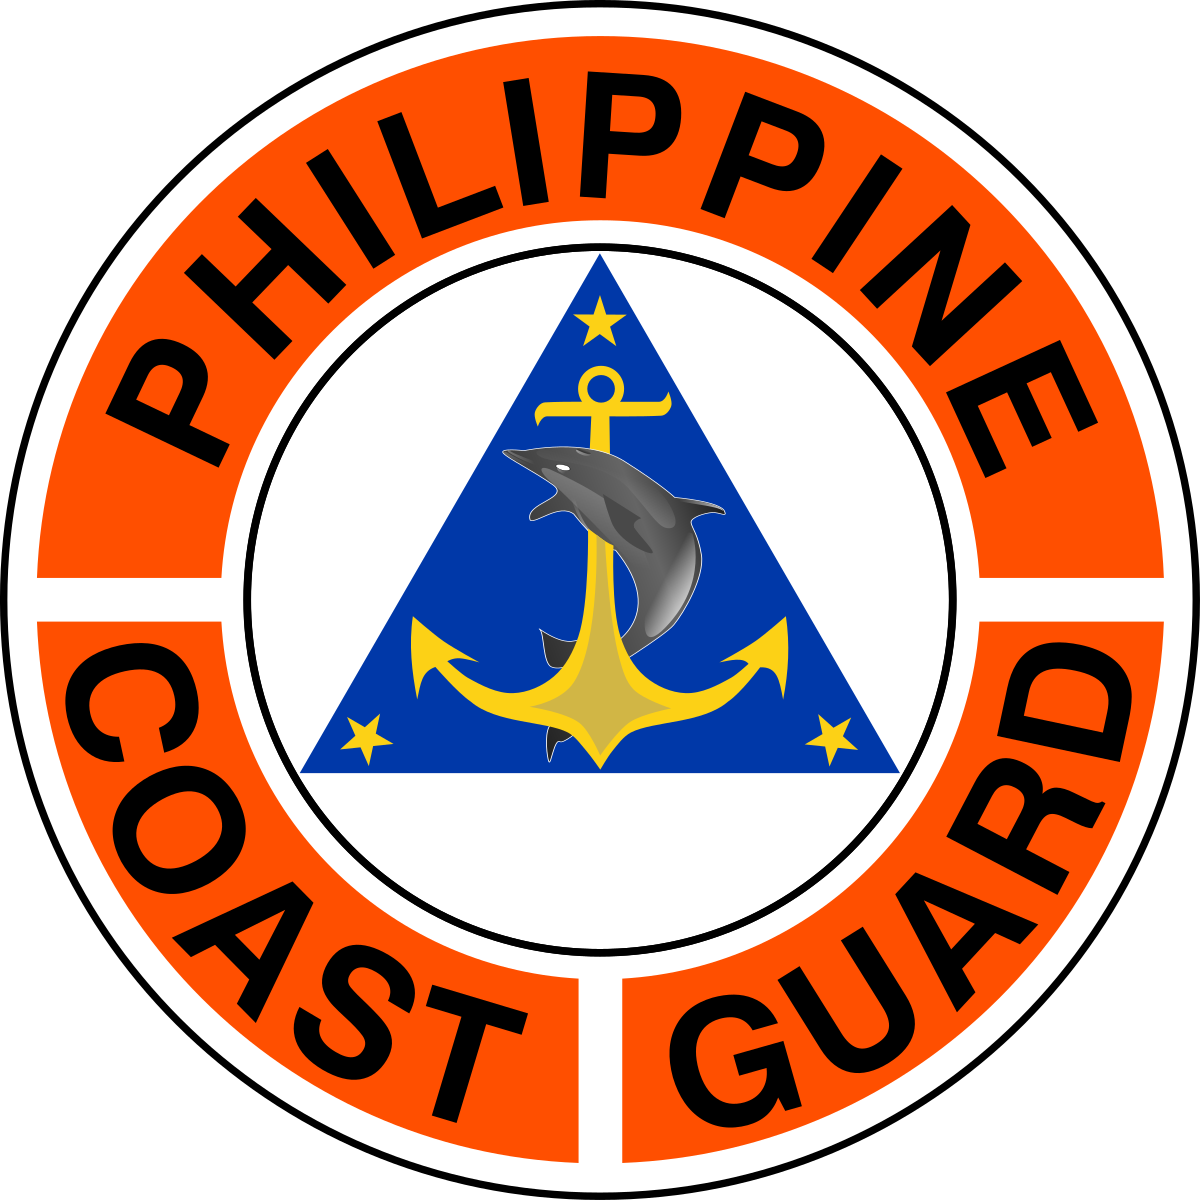 philippine-coast-guard-military-wiki-fandom-powered-by-wikia